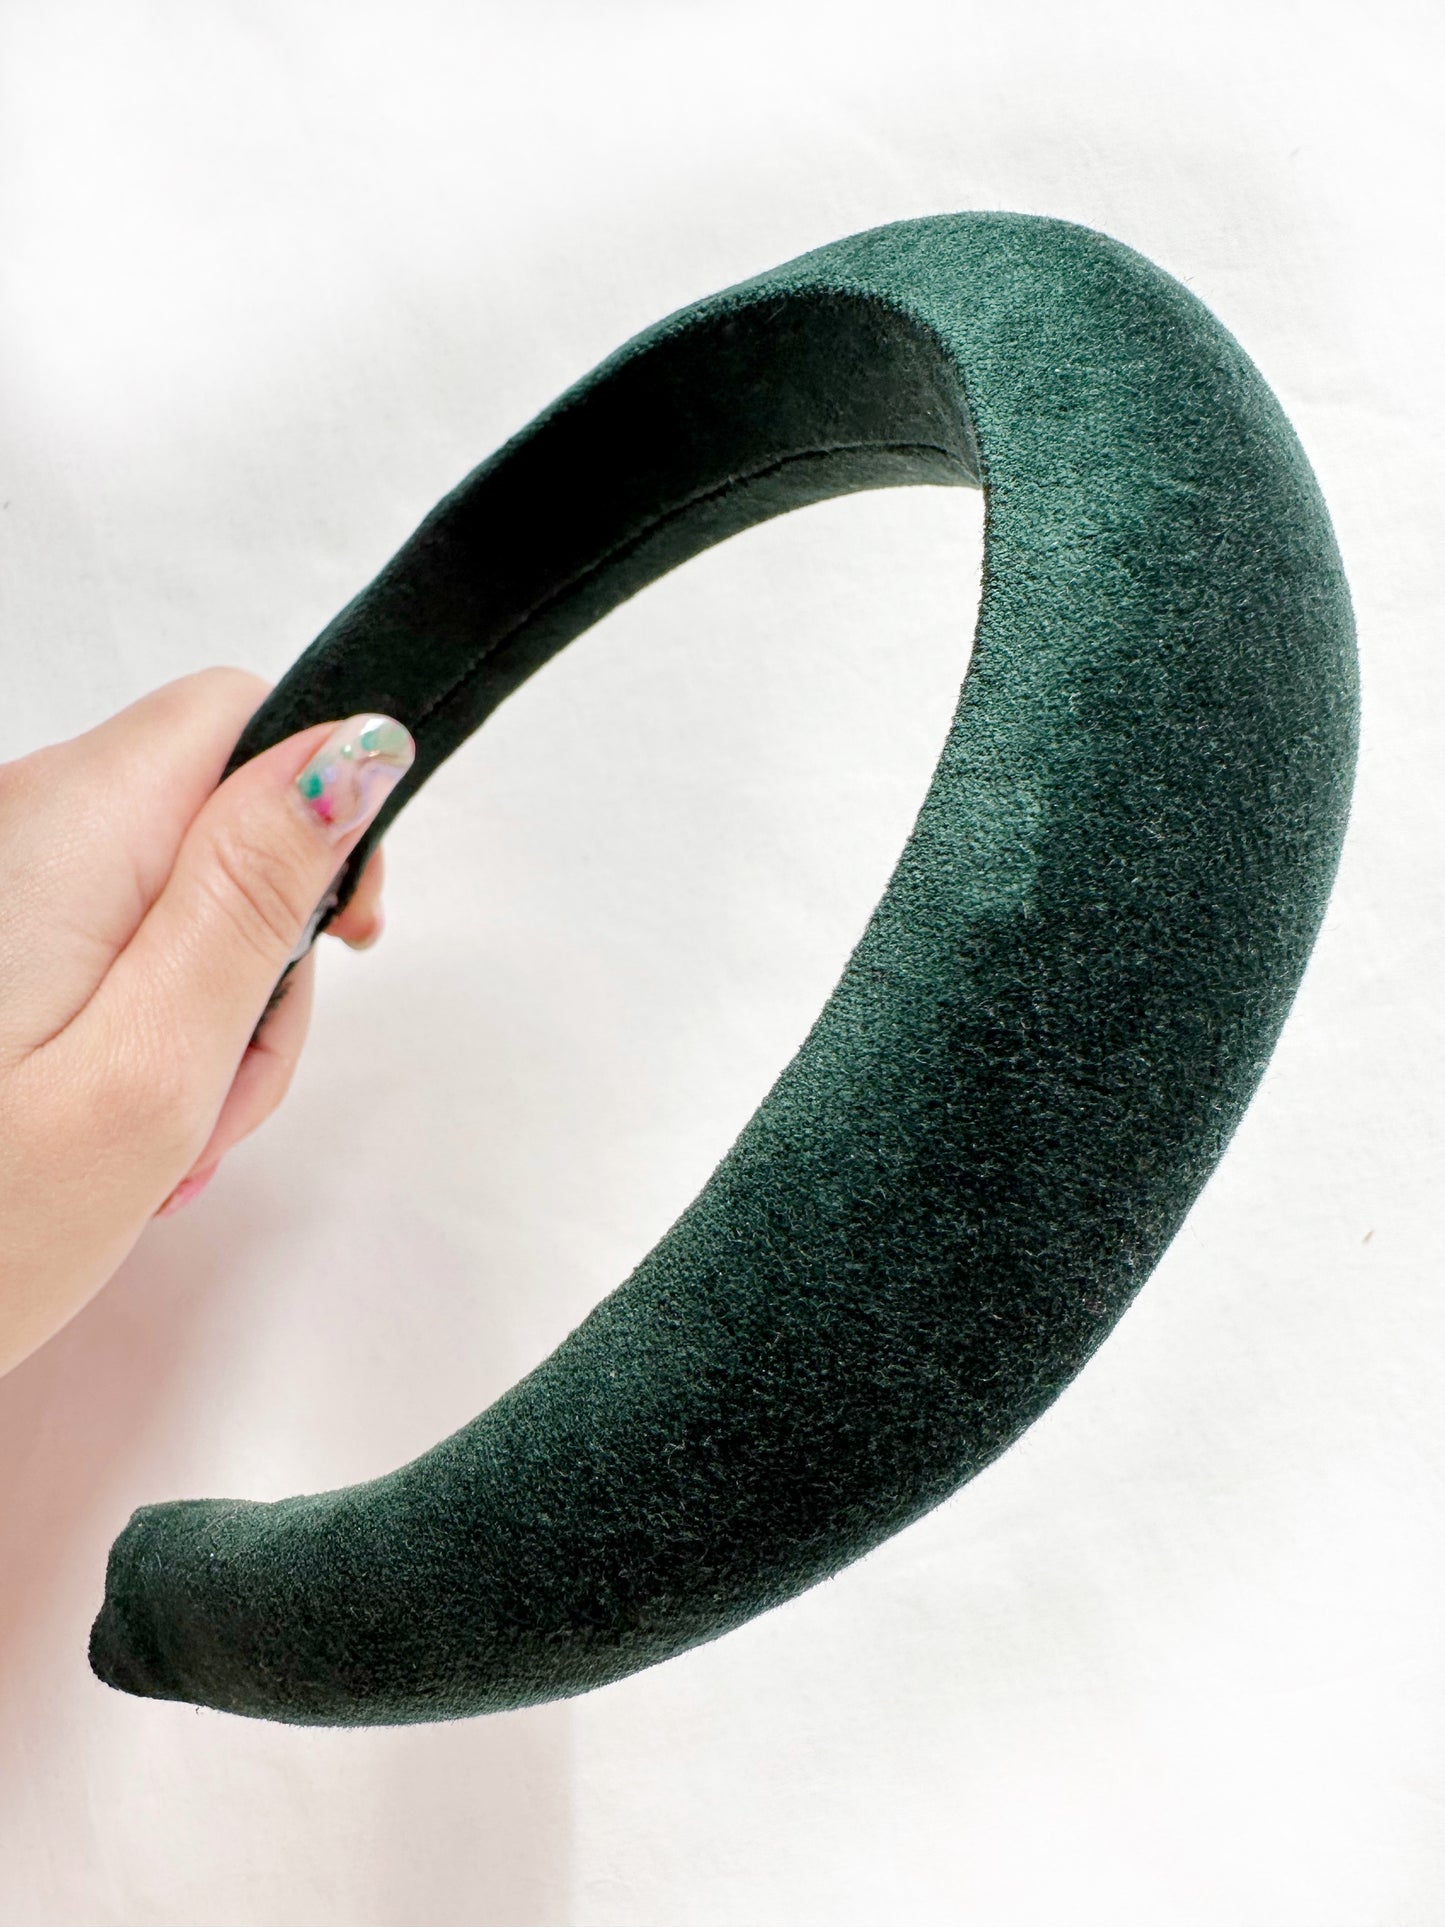 Padded headband in hunter green velvet